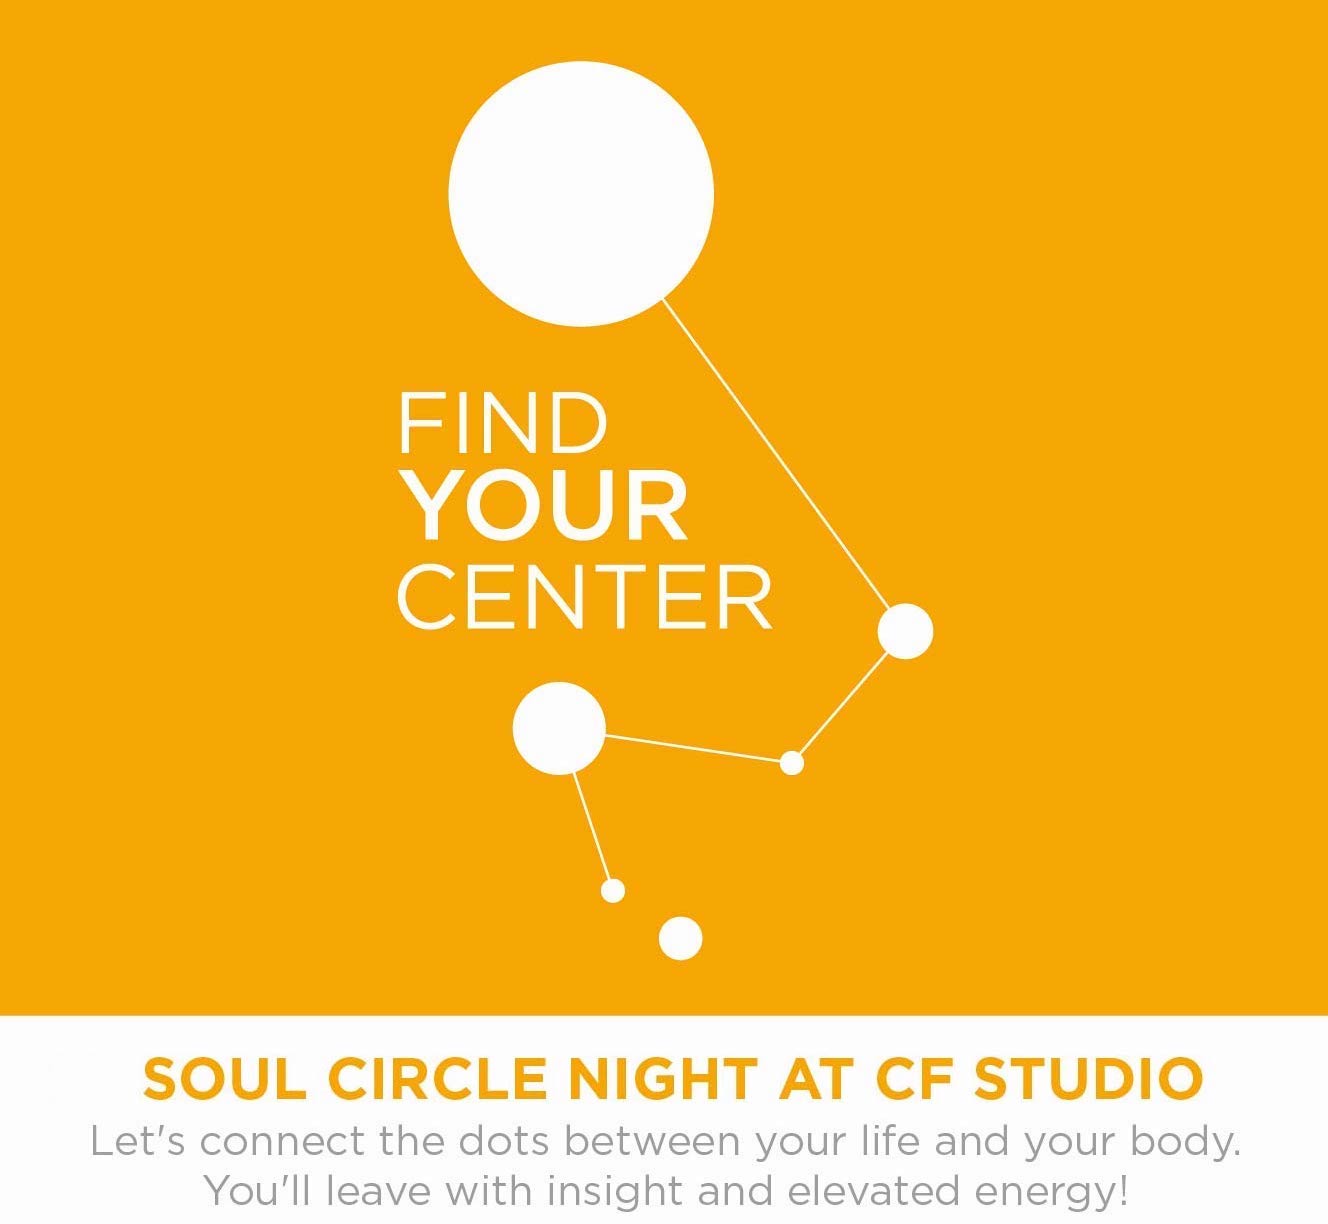 soul circle